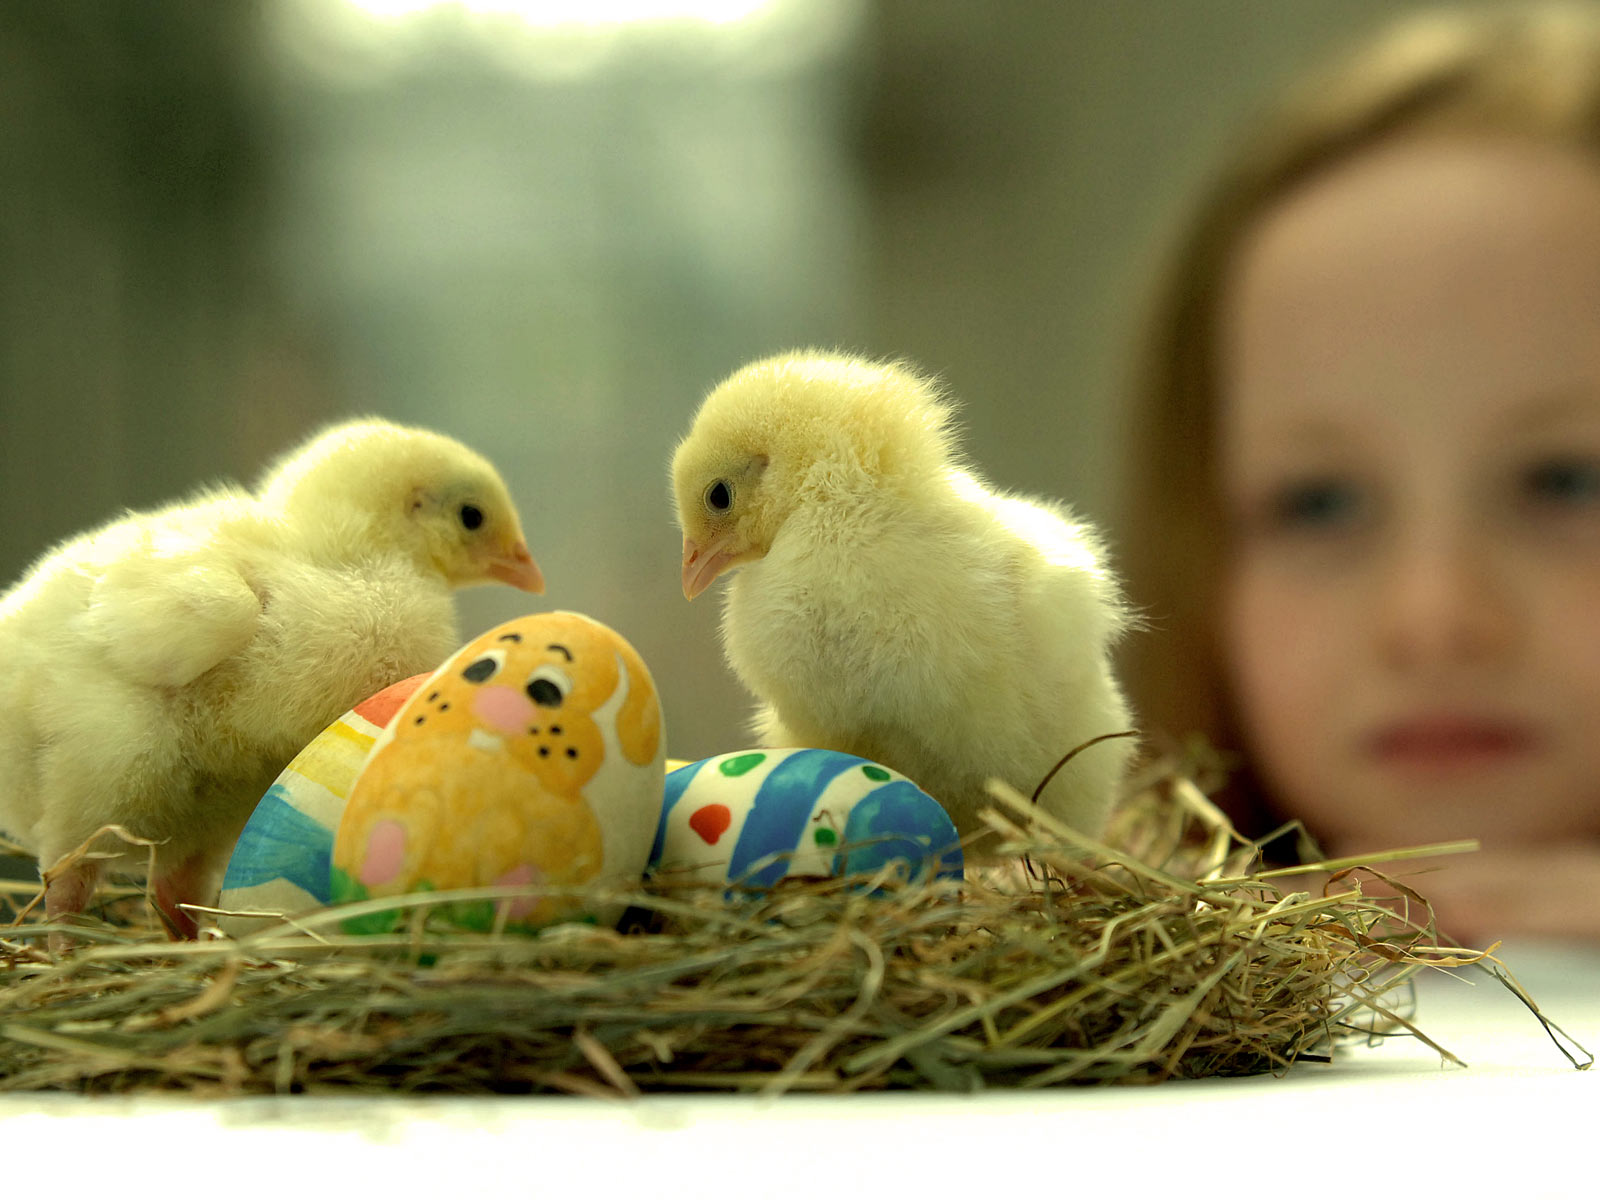 madre amor fondos de pantalla,huevo,pájaro,pollo,huevo de pascua,pascua de resurrección